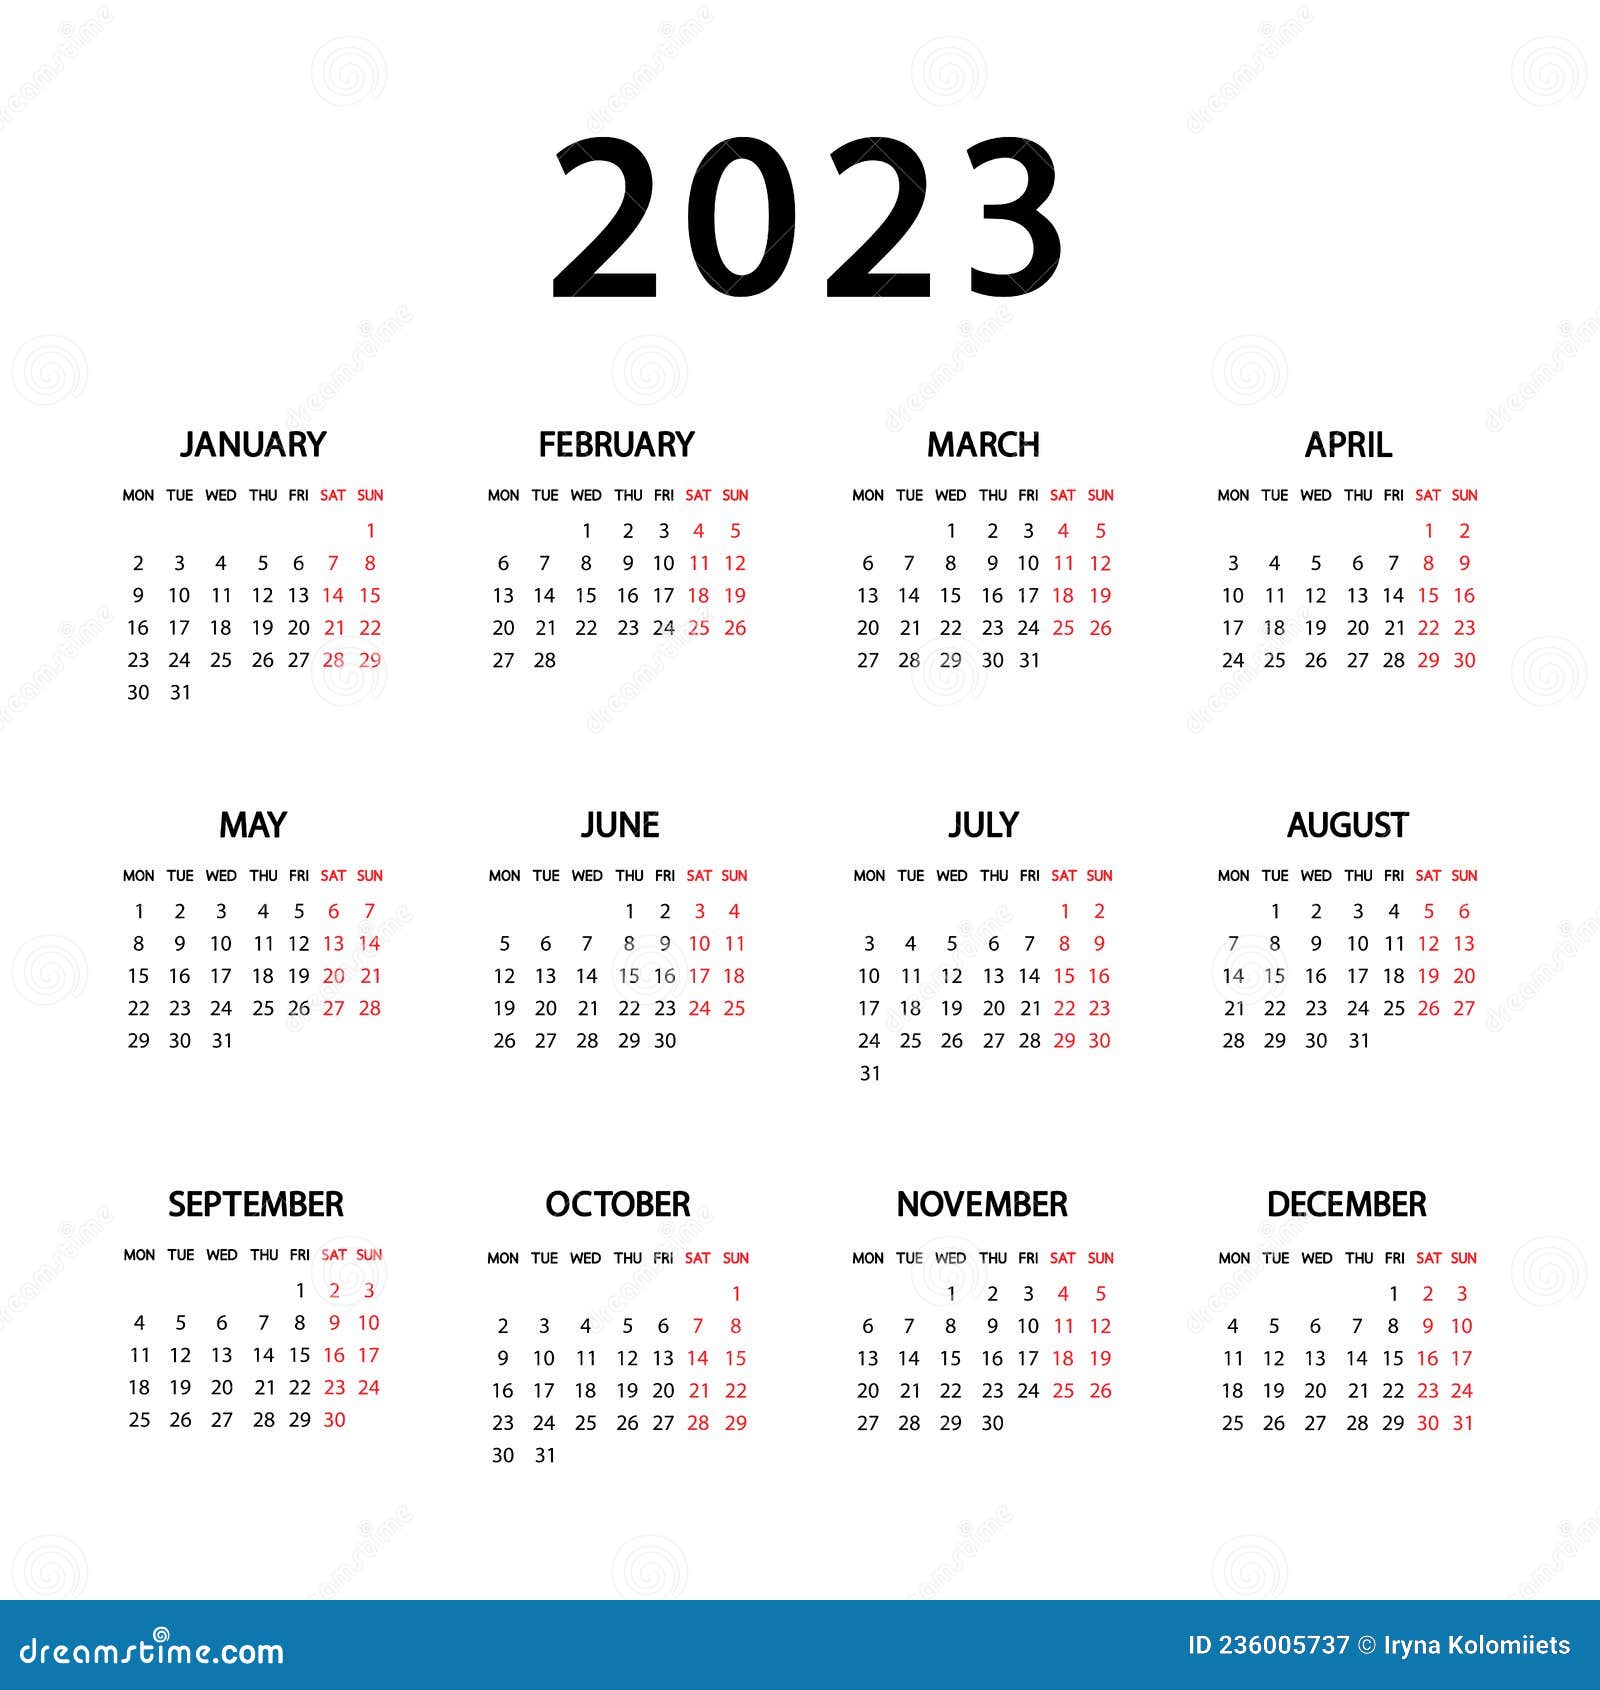 Каким будет январь 2023 года